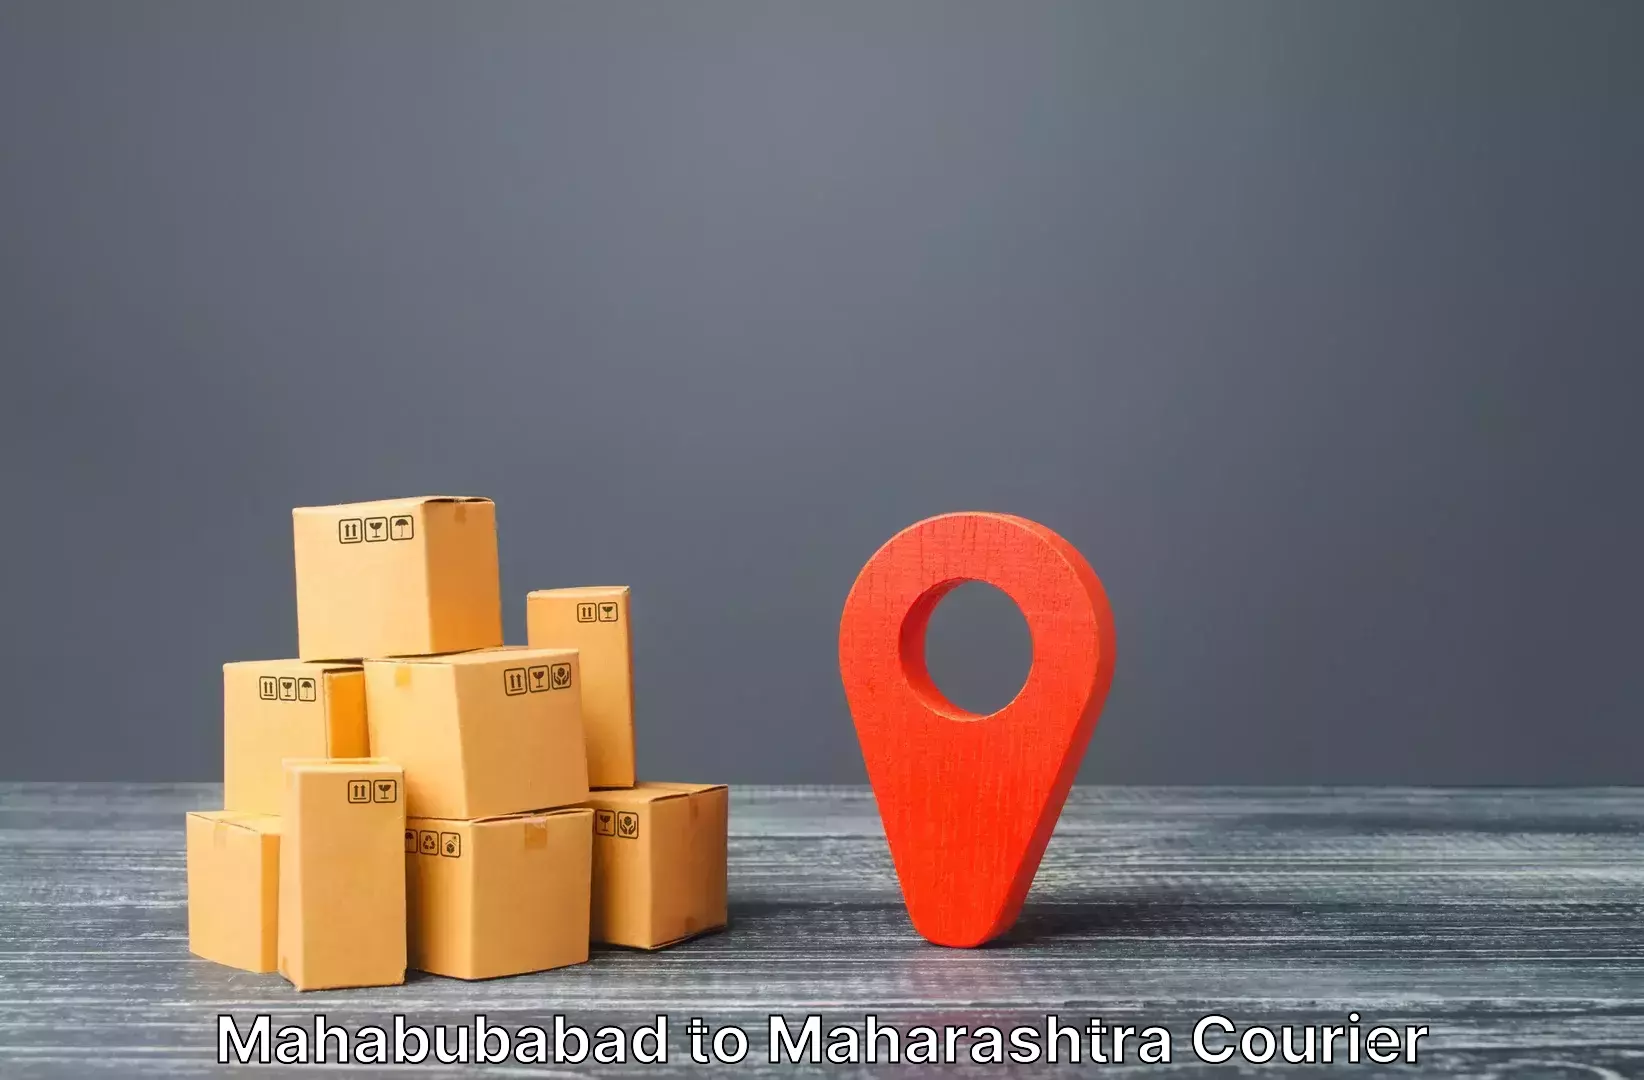 Luggage transport company Mahabubabad to Morshi